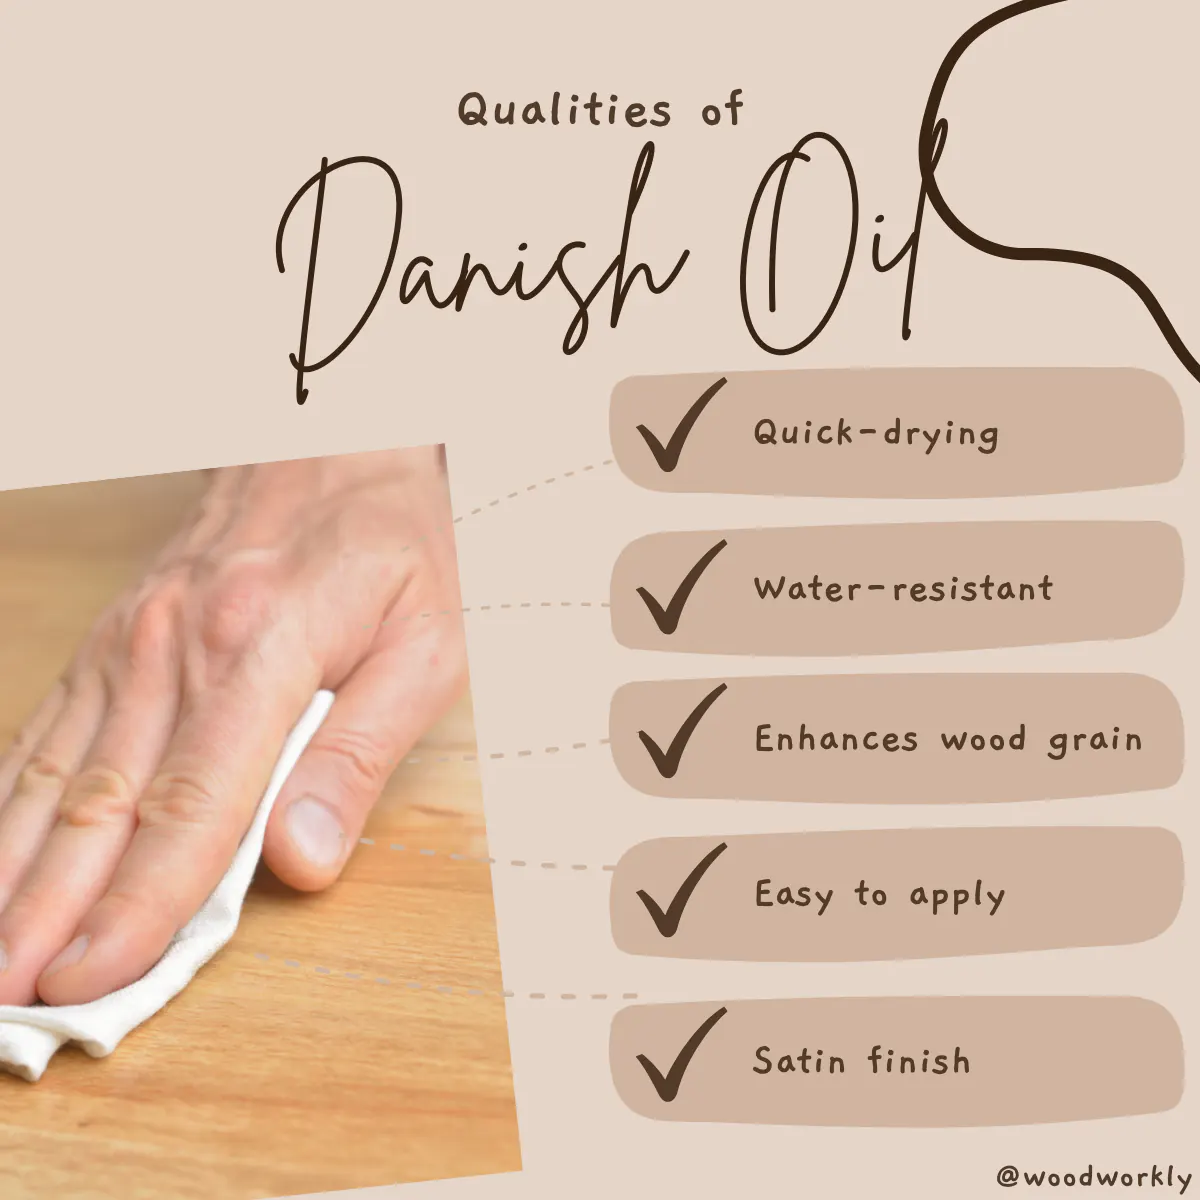 Qualities of Danish Oil